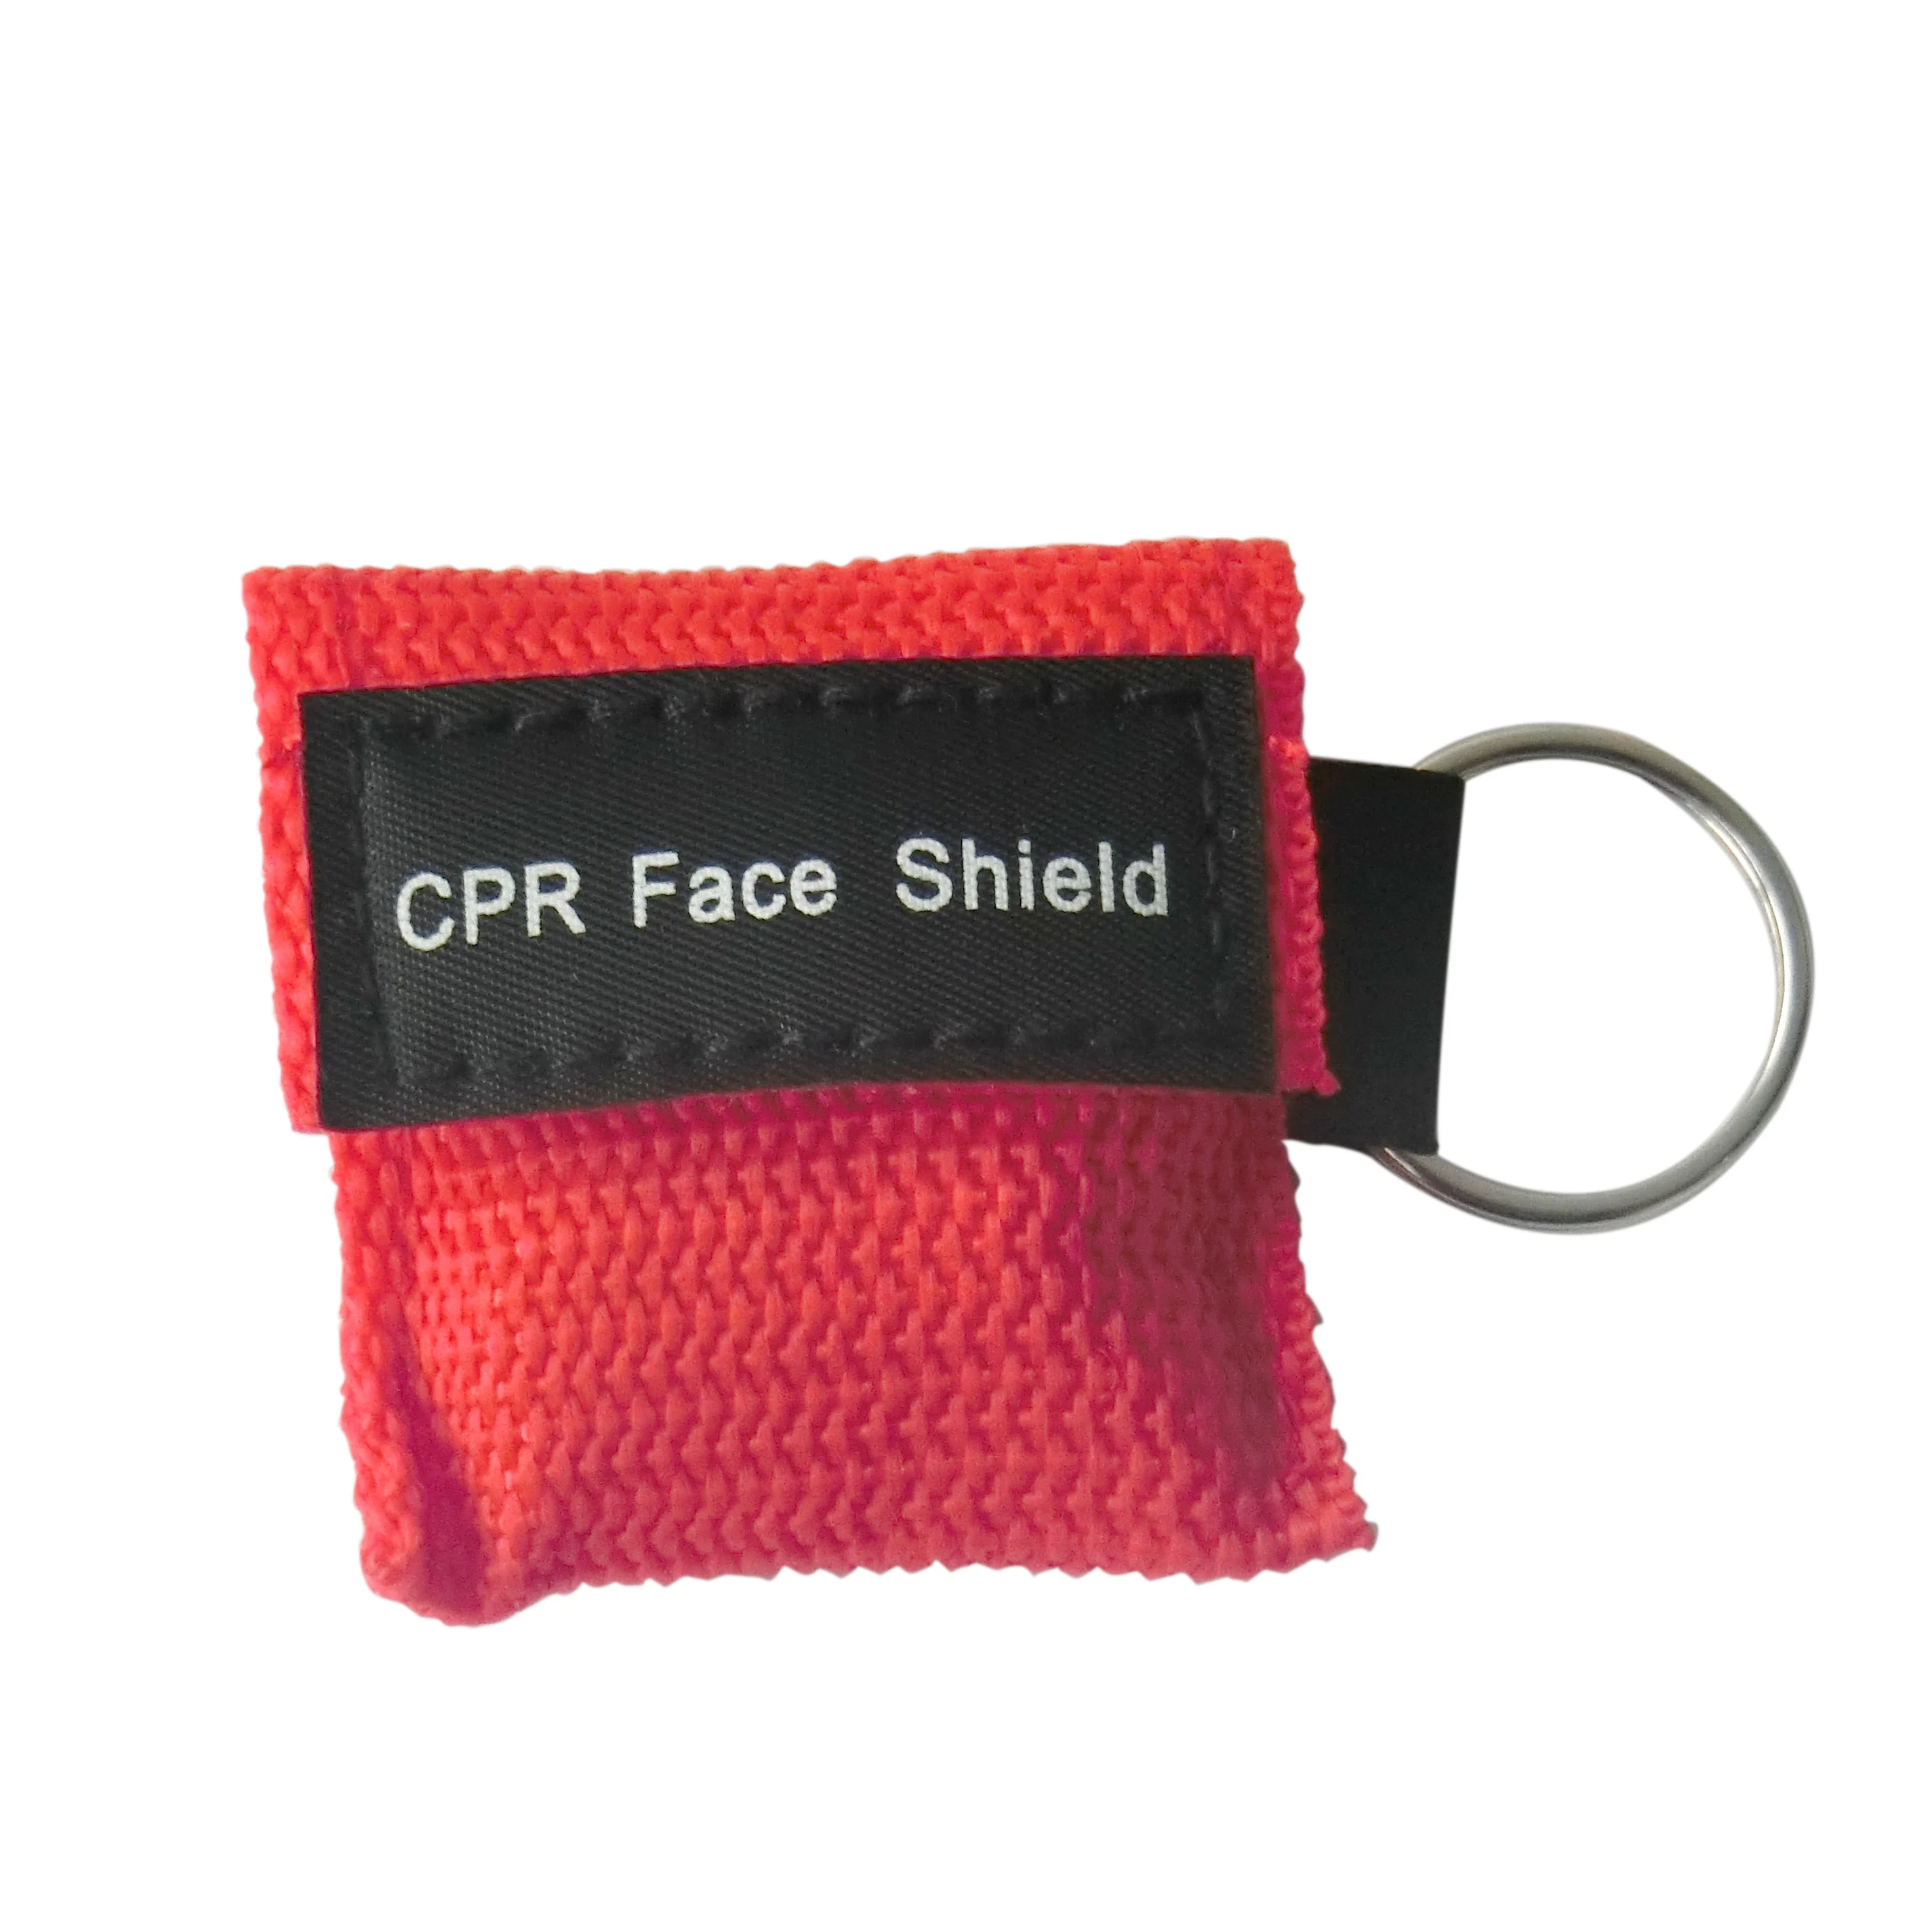 2 шт. маска для искусственного дыхания при реанимации защитный экран CPR связка ключей с односторонним клапаном оказание первой помощи учебные материалы для медицинской помощи